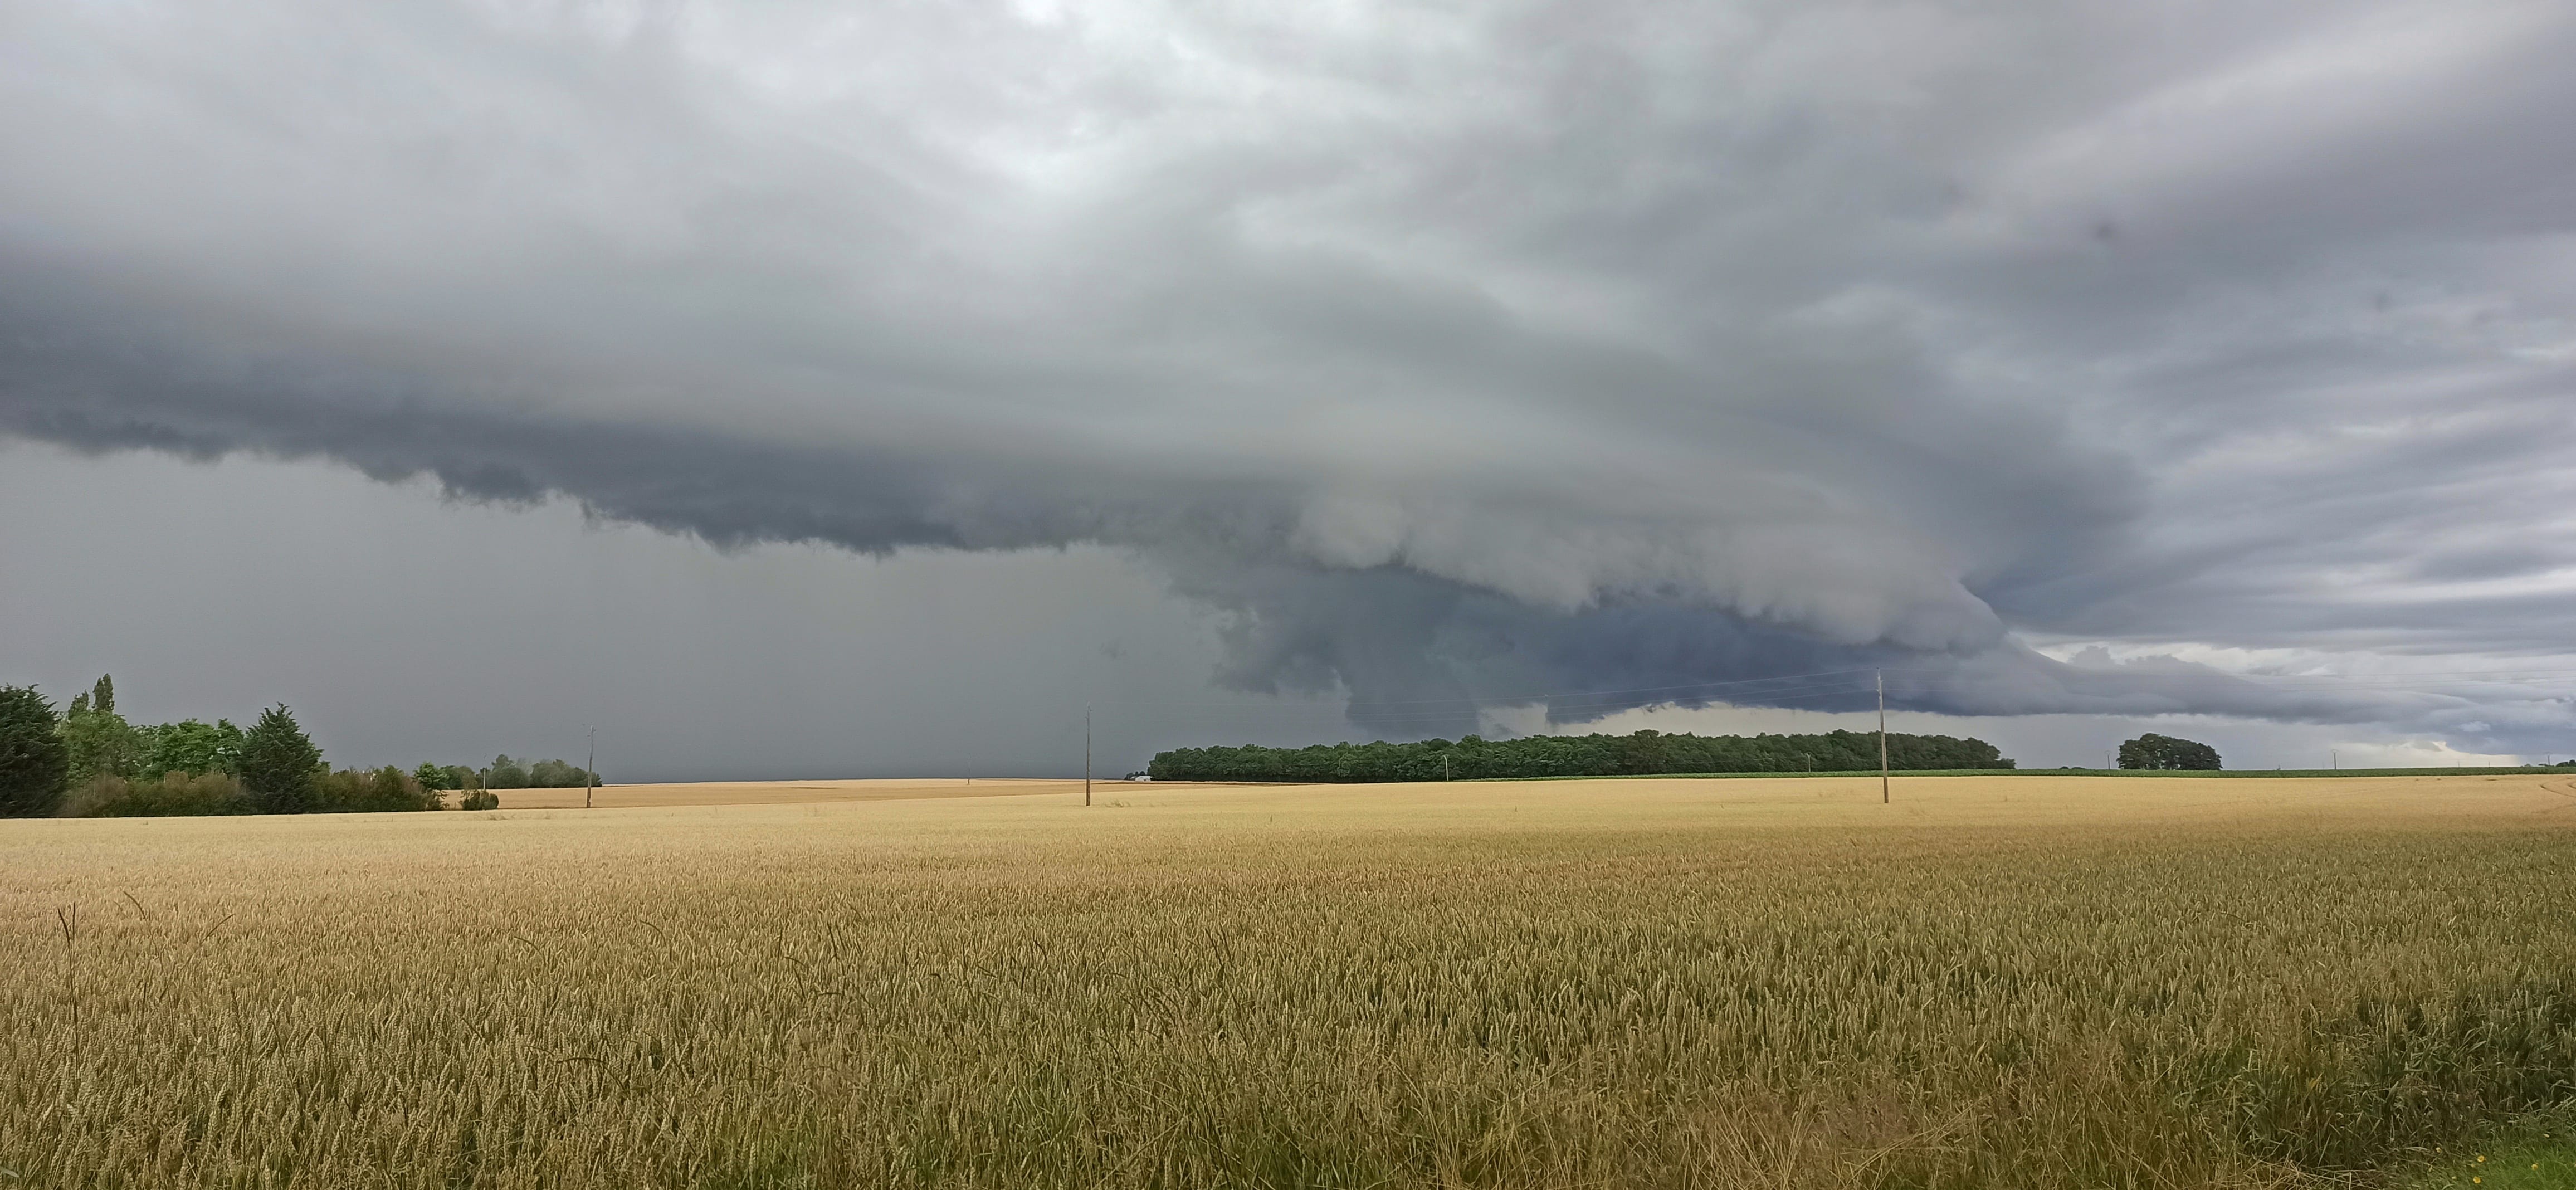 Bel orage dans la plaine, au nord ouest d'Orléans - 29/06/2021 19:56 - Anaïs Poumot